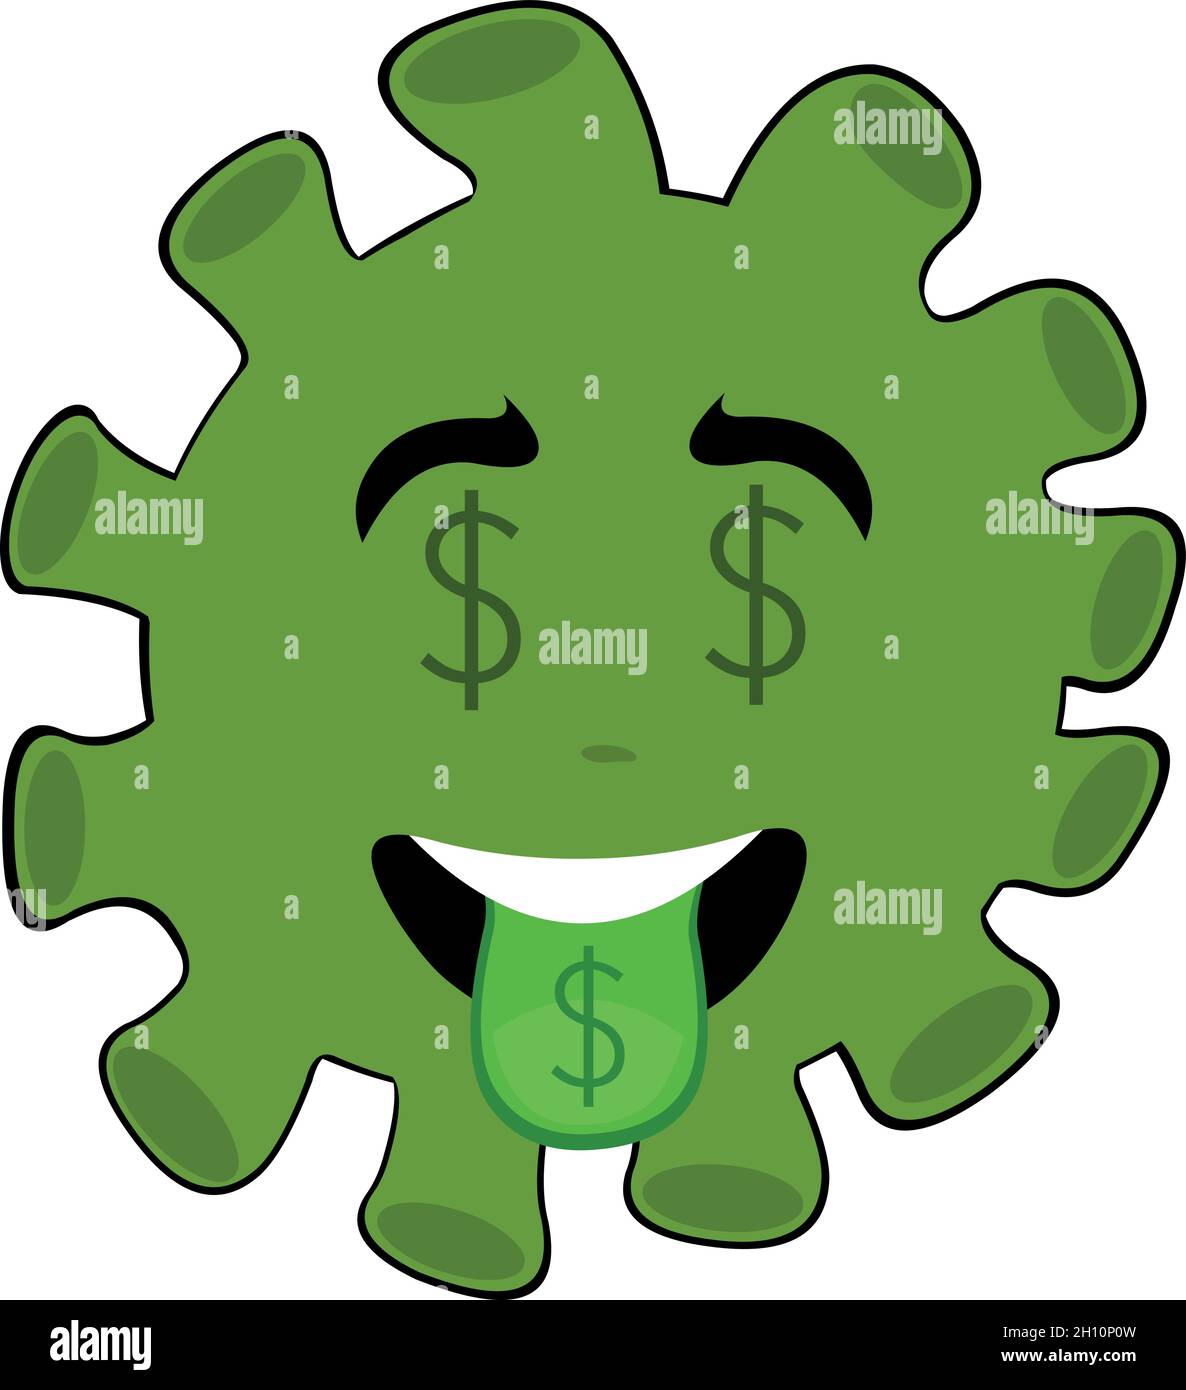 Vecteur émoticône illustration d'une bactérie de dessin animé, virus ou microbe avec le dollar signe dans ses yeux et la langue en dehors Illustration de Vecteur